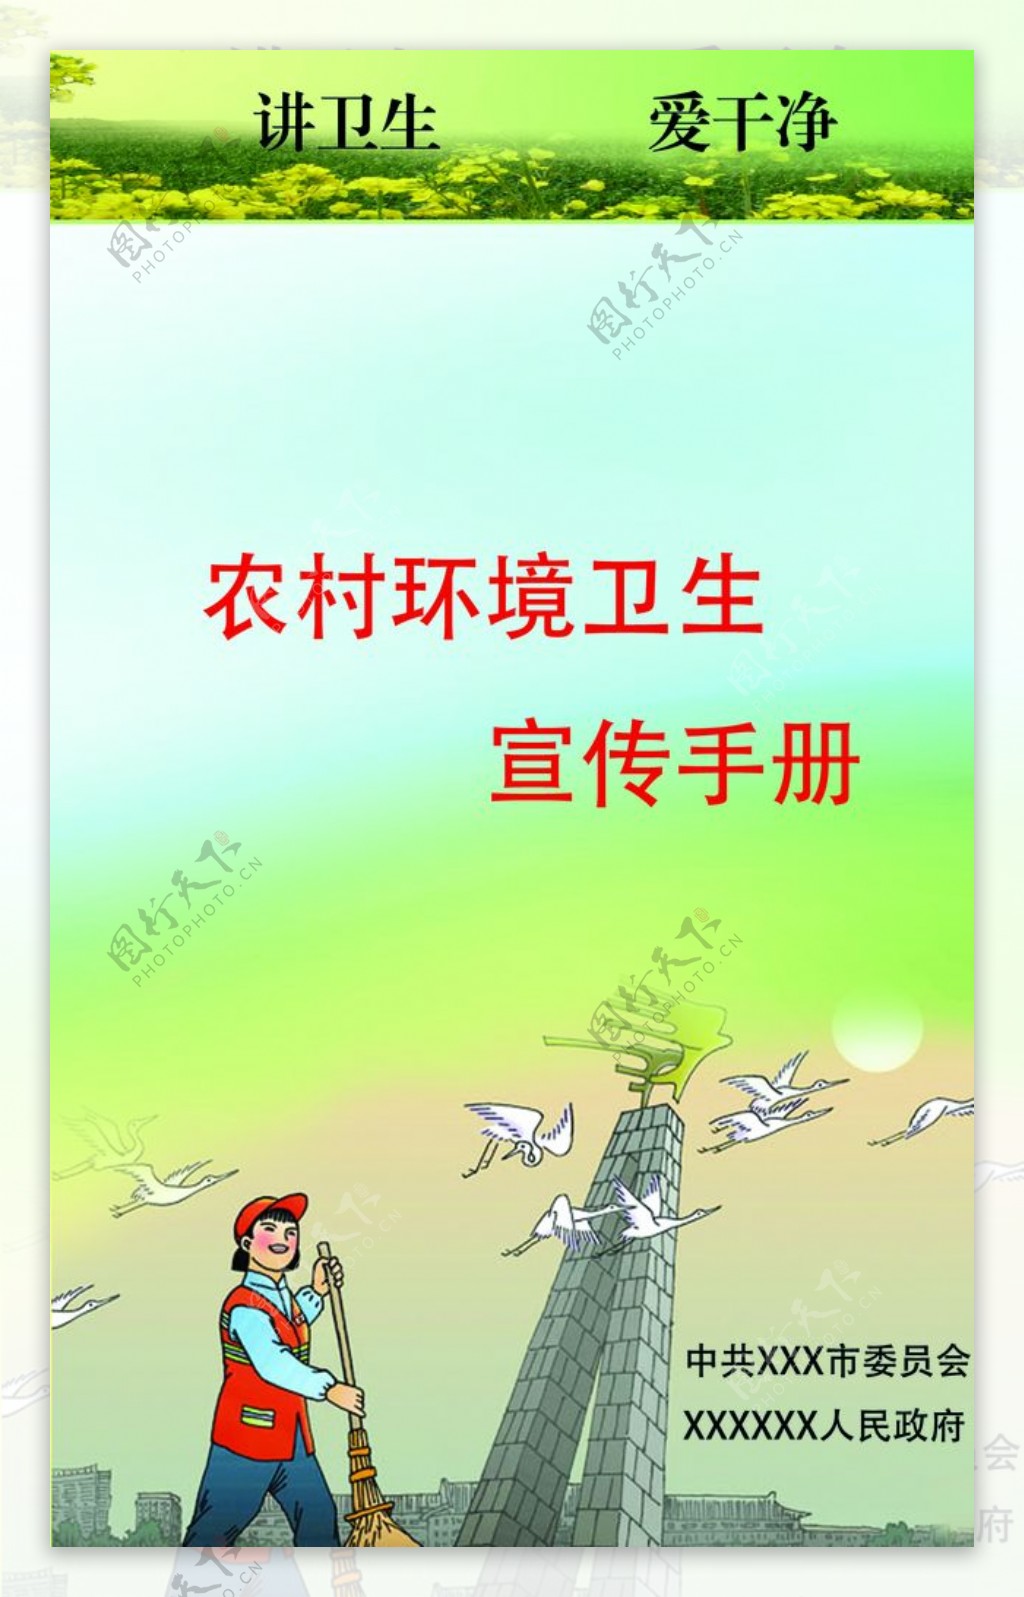 农村环境卫生宣传手册封面图片